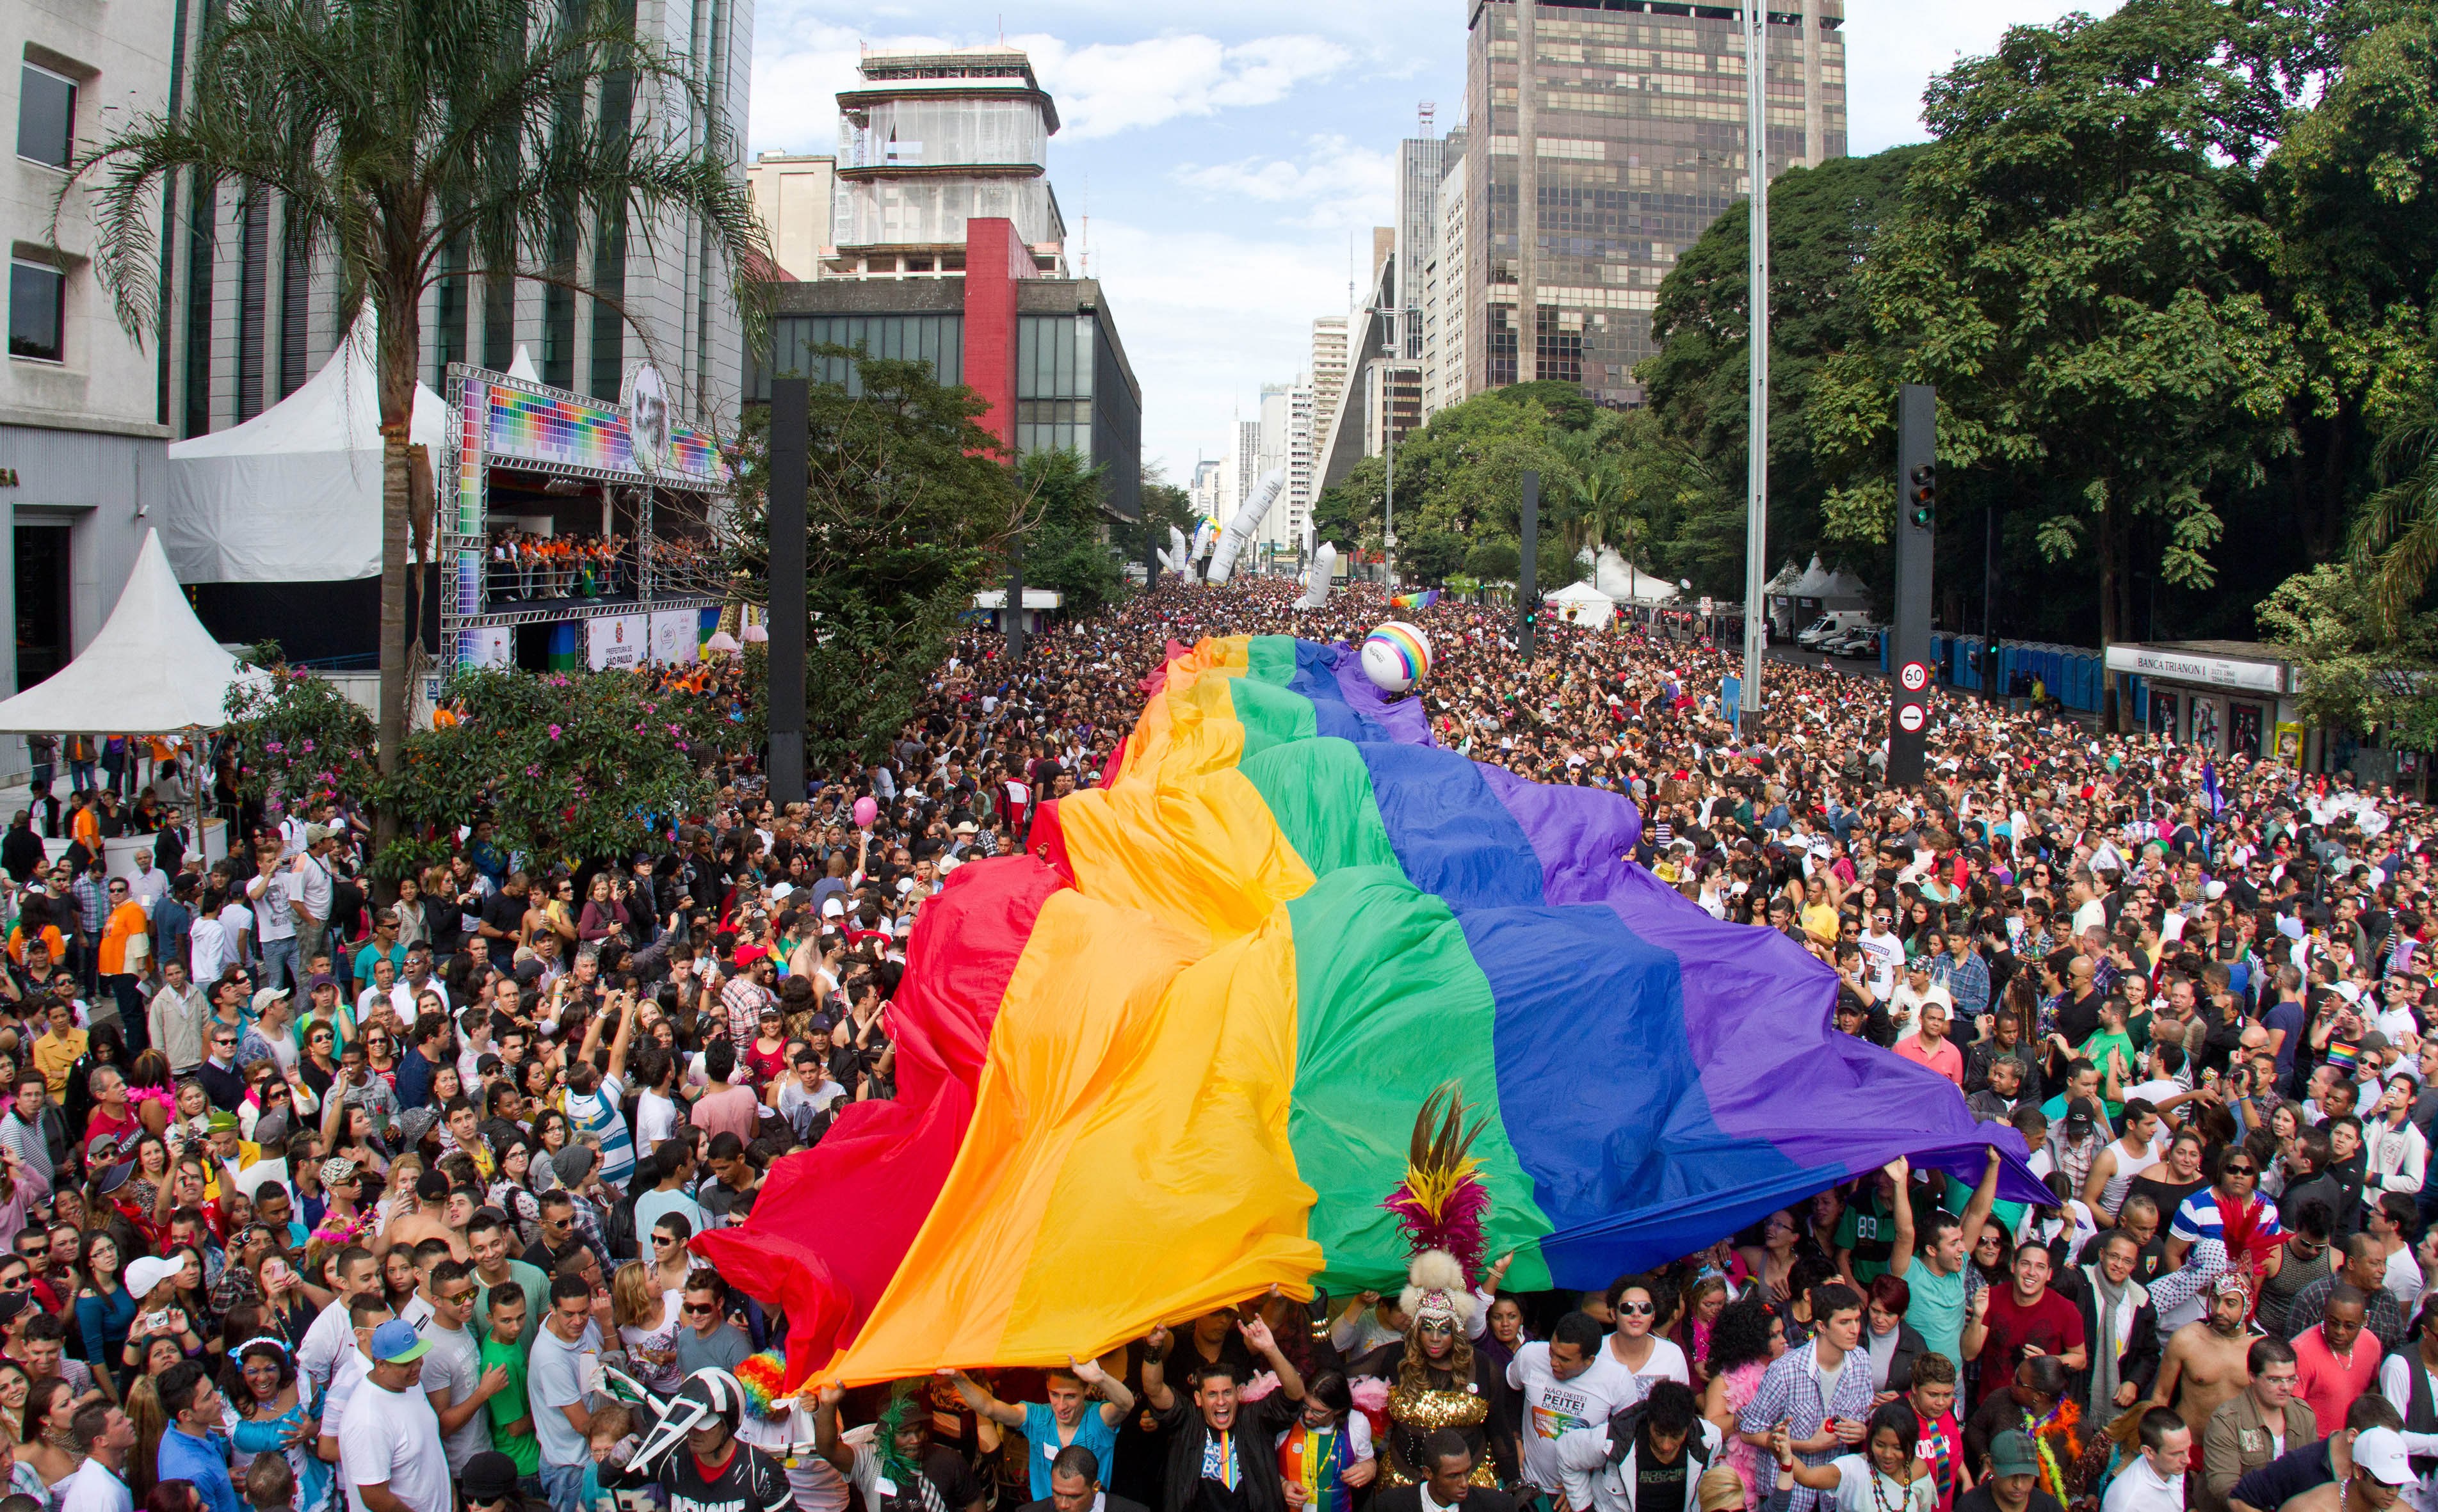 PARADA LGBT  SÃO PAULO (SP)  10.06.2012  GERAL -16 PARADA DO ORGULHO  LGBT, REALIZADA NA AVENIDA PAULISTA, SÃO PAULO. FOTO: JOSE CORDEIRO/SPTURIS